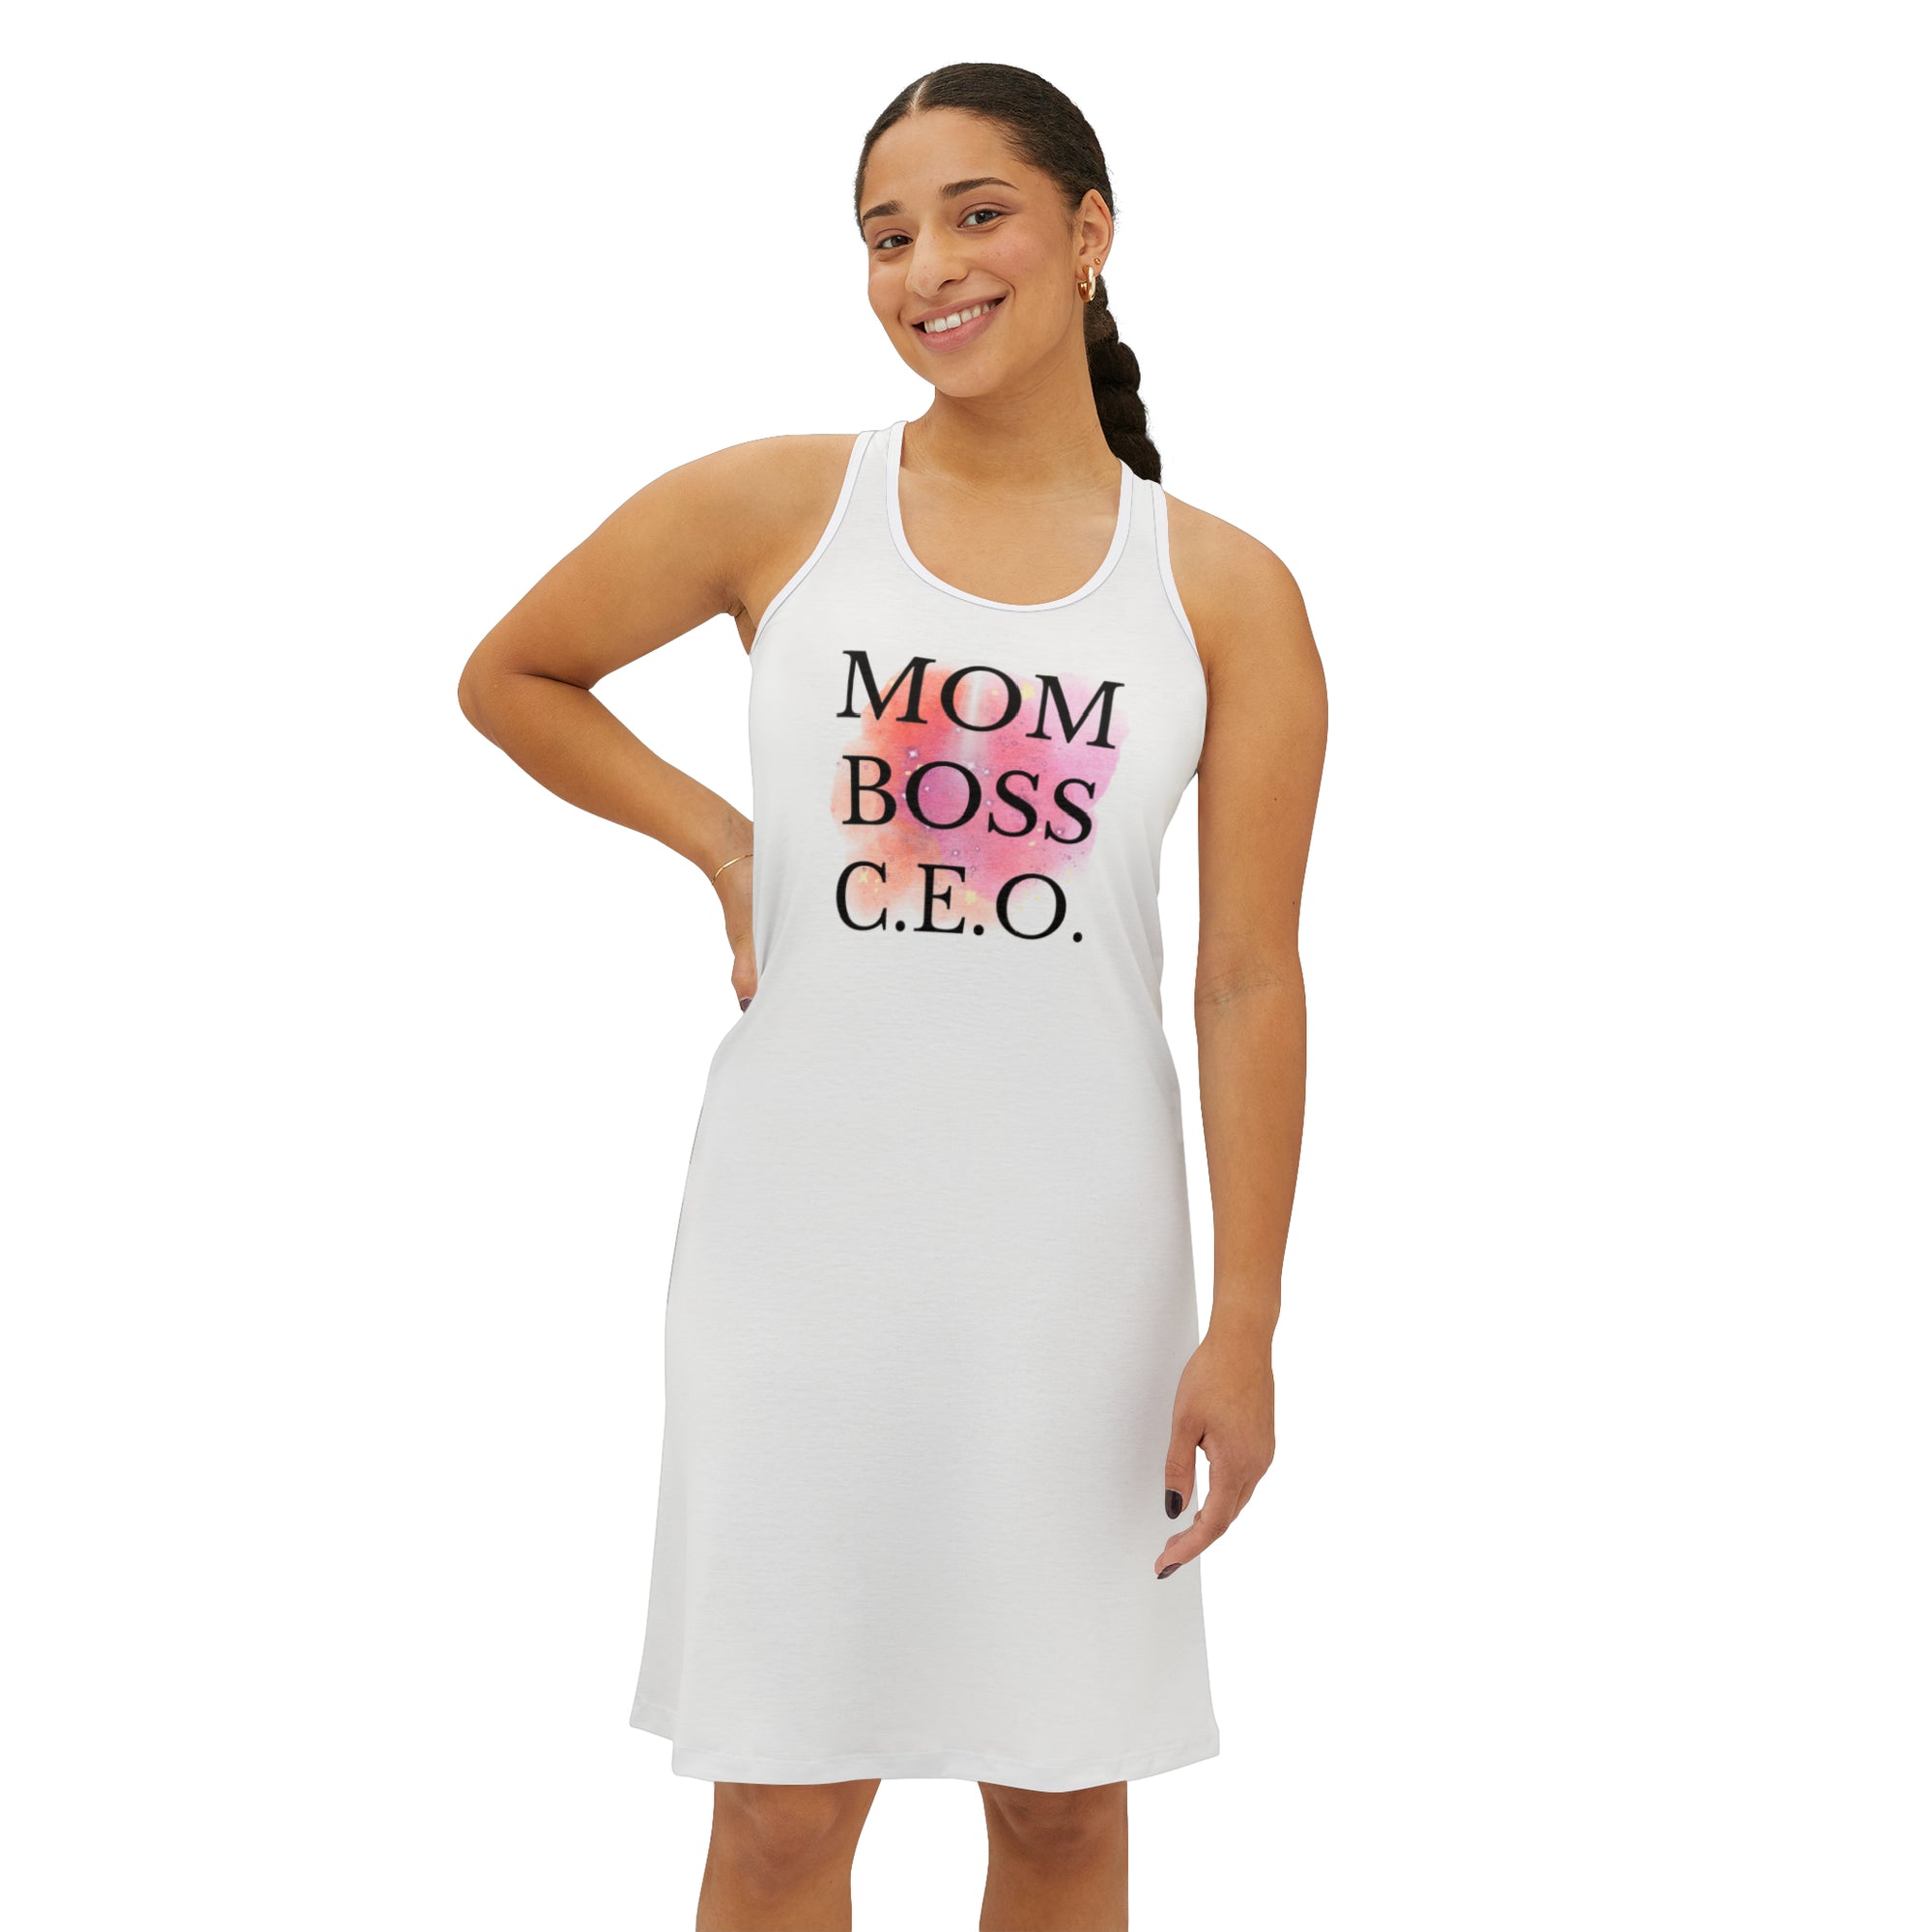 Mom Boss C.E.O Dress